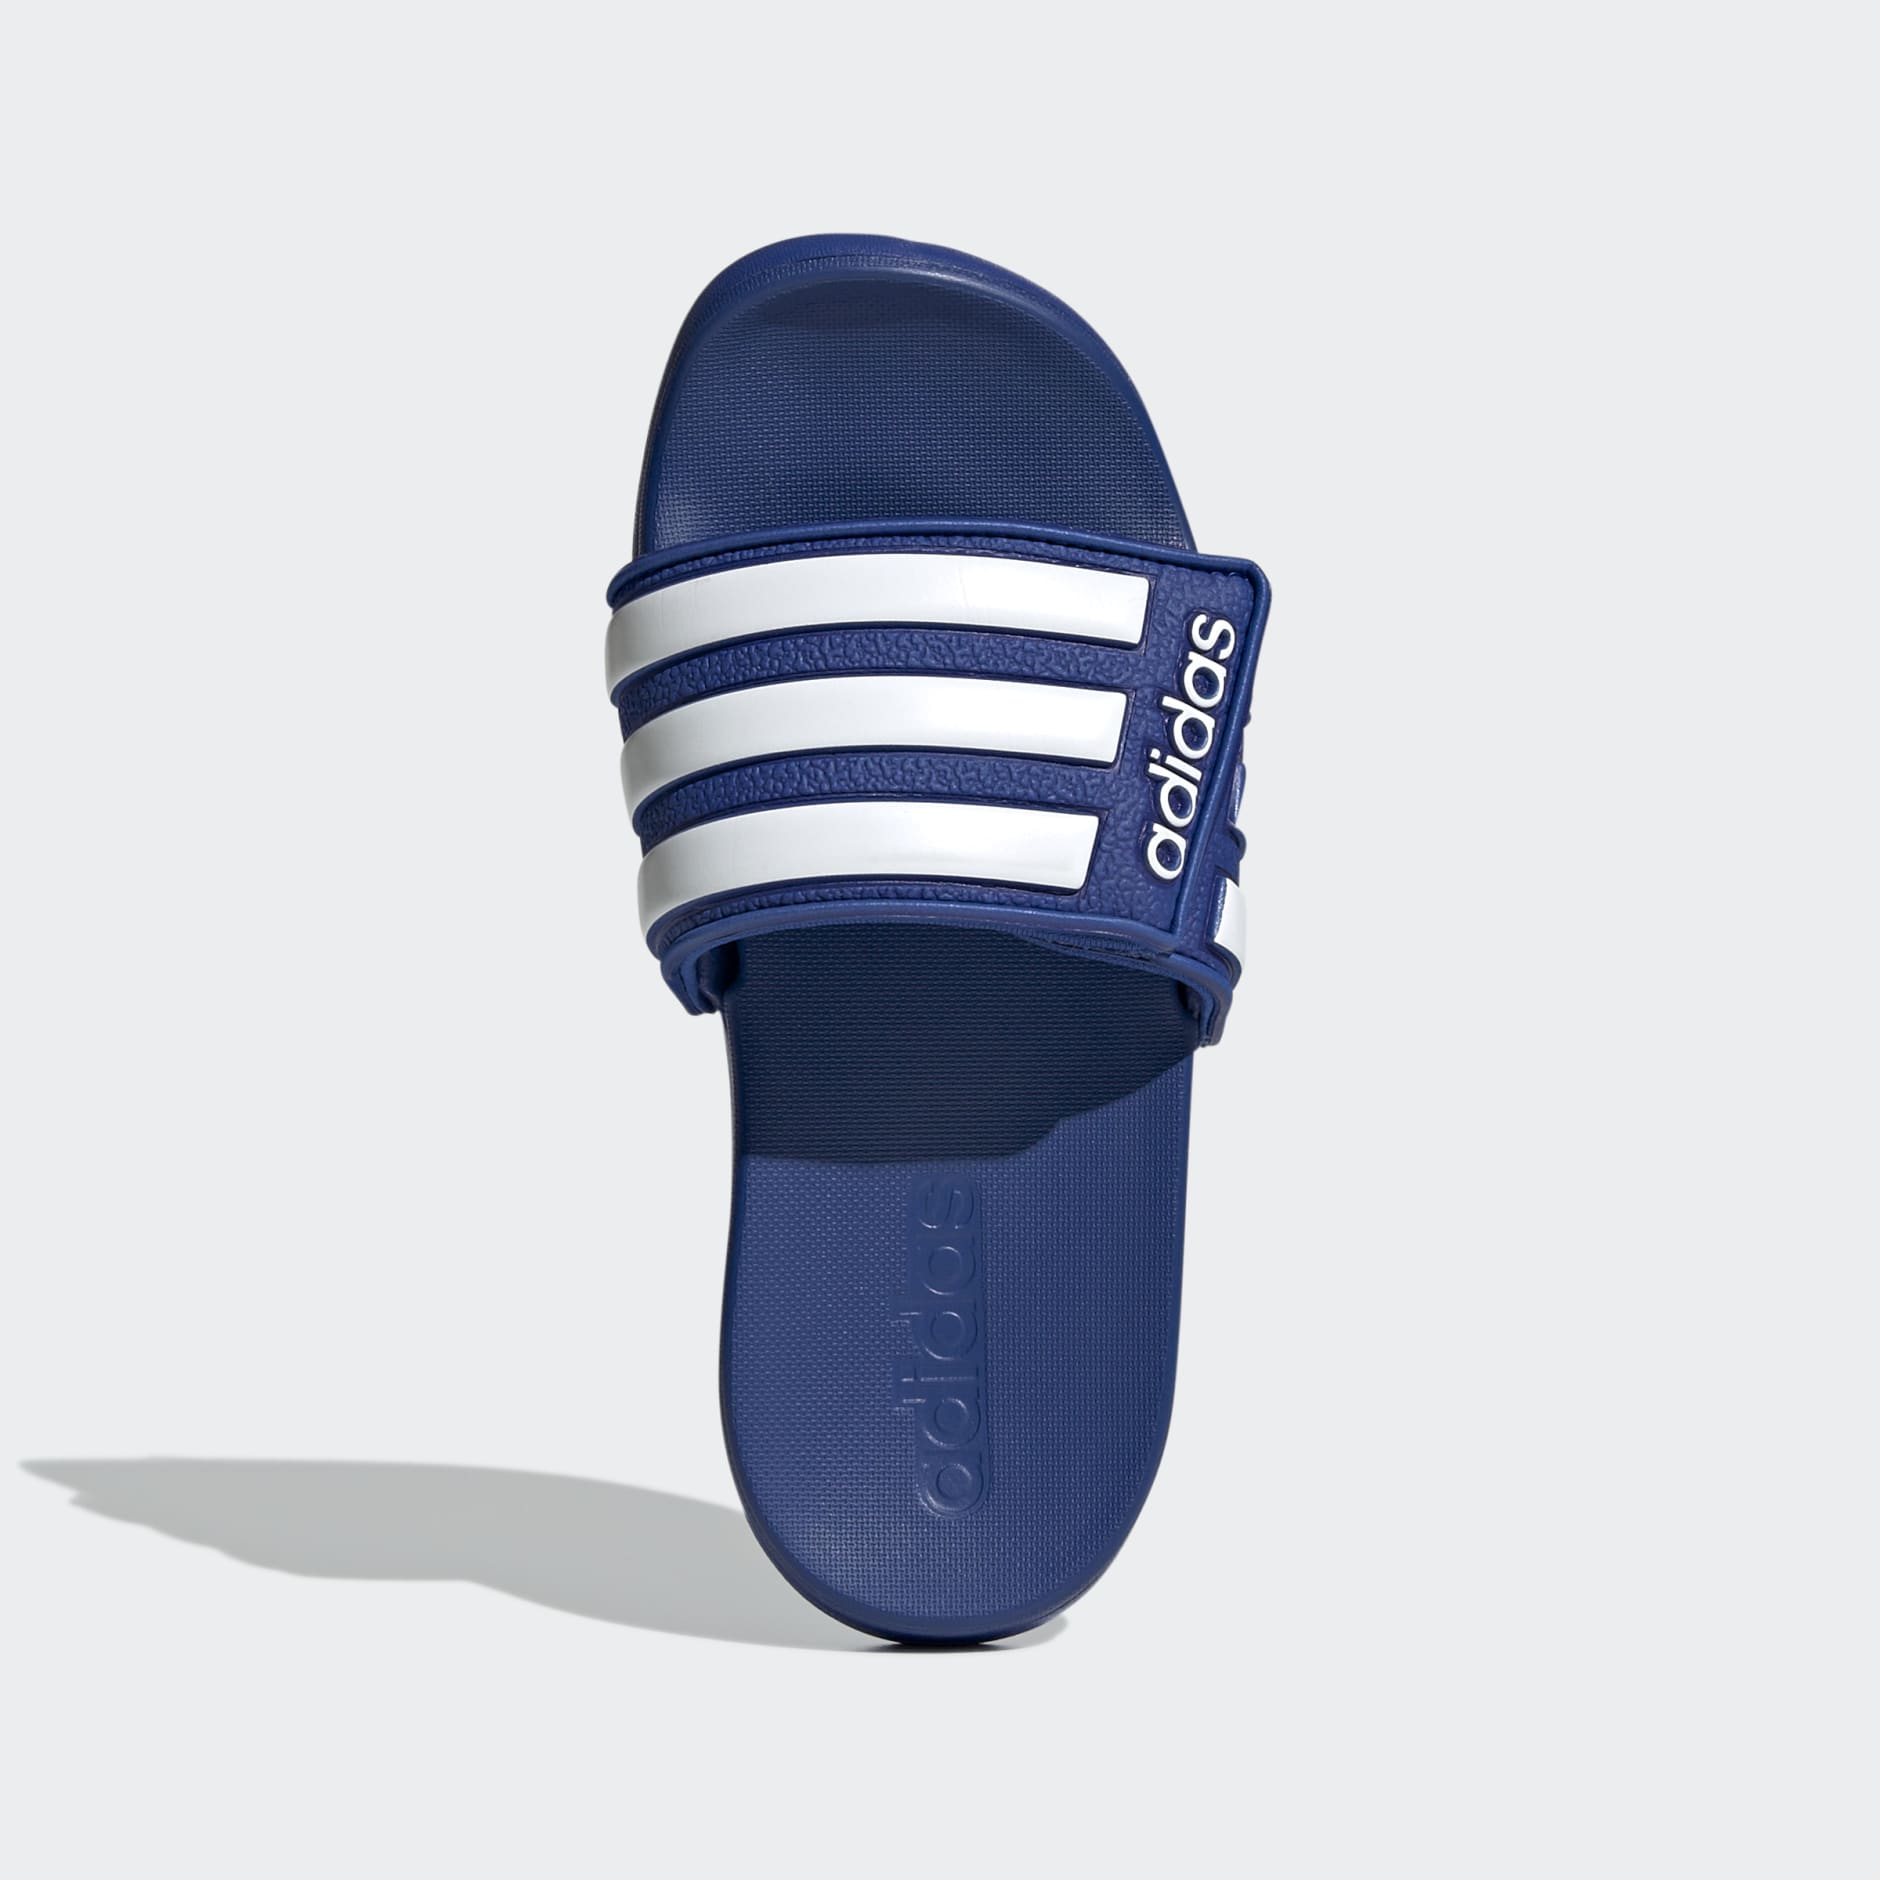 Adilette Cloudfoam Plus Explorer Slides Rose Gold / Grey / Core Black  B75679 | Adidas sandals, Workout accessories, Adidas adilette